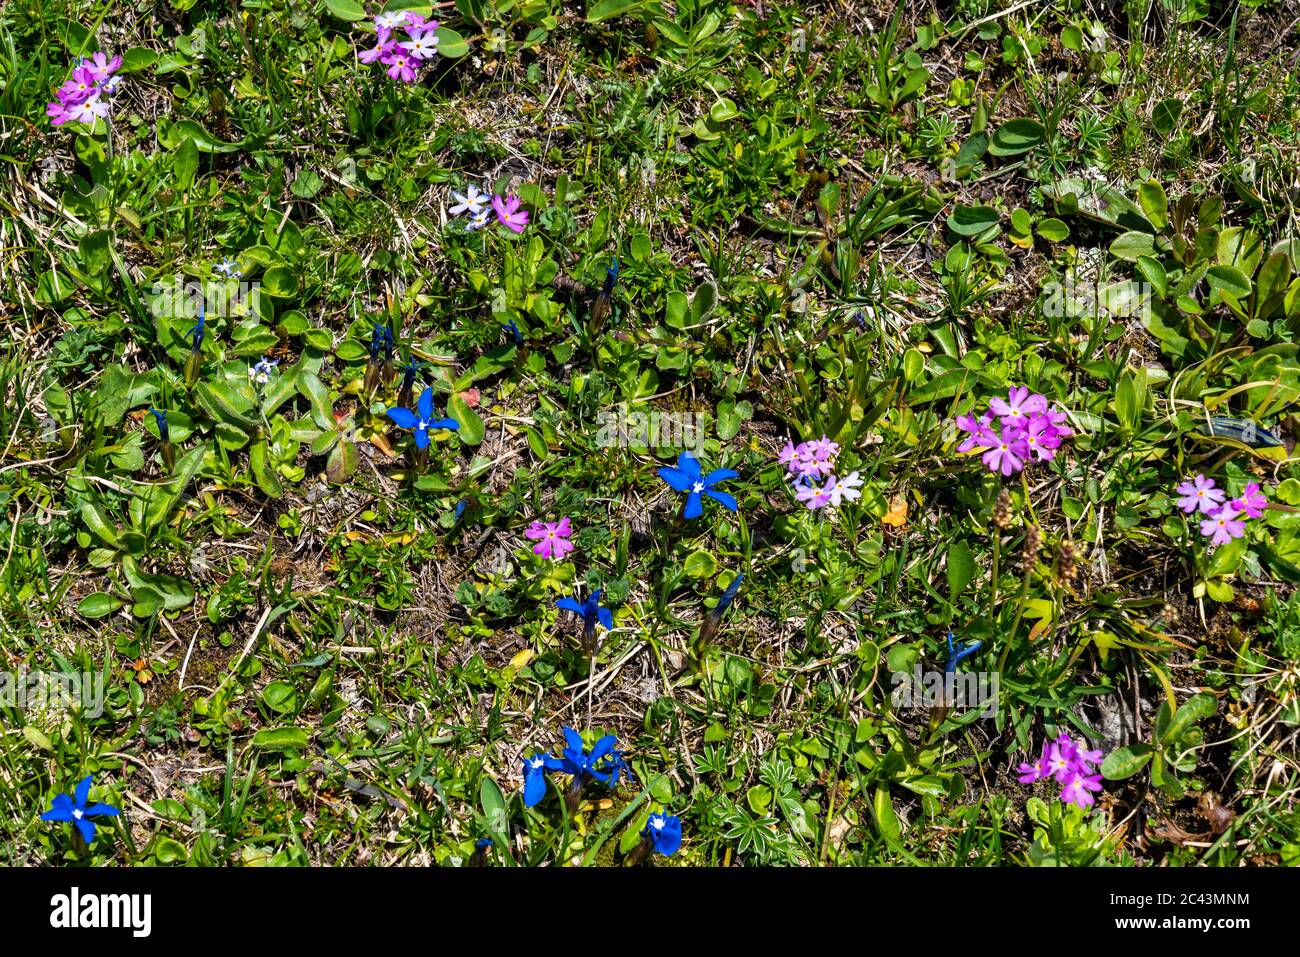 Blumen in den Bergen, Bergblumen, Blumen, Wiesenblumen, Vorarlberg,  Bregenzerwald, Lechtal, Österreich, verschiedene Blumen, Enzian  Stockfotografie - Alamy